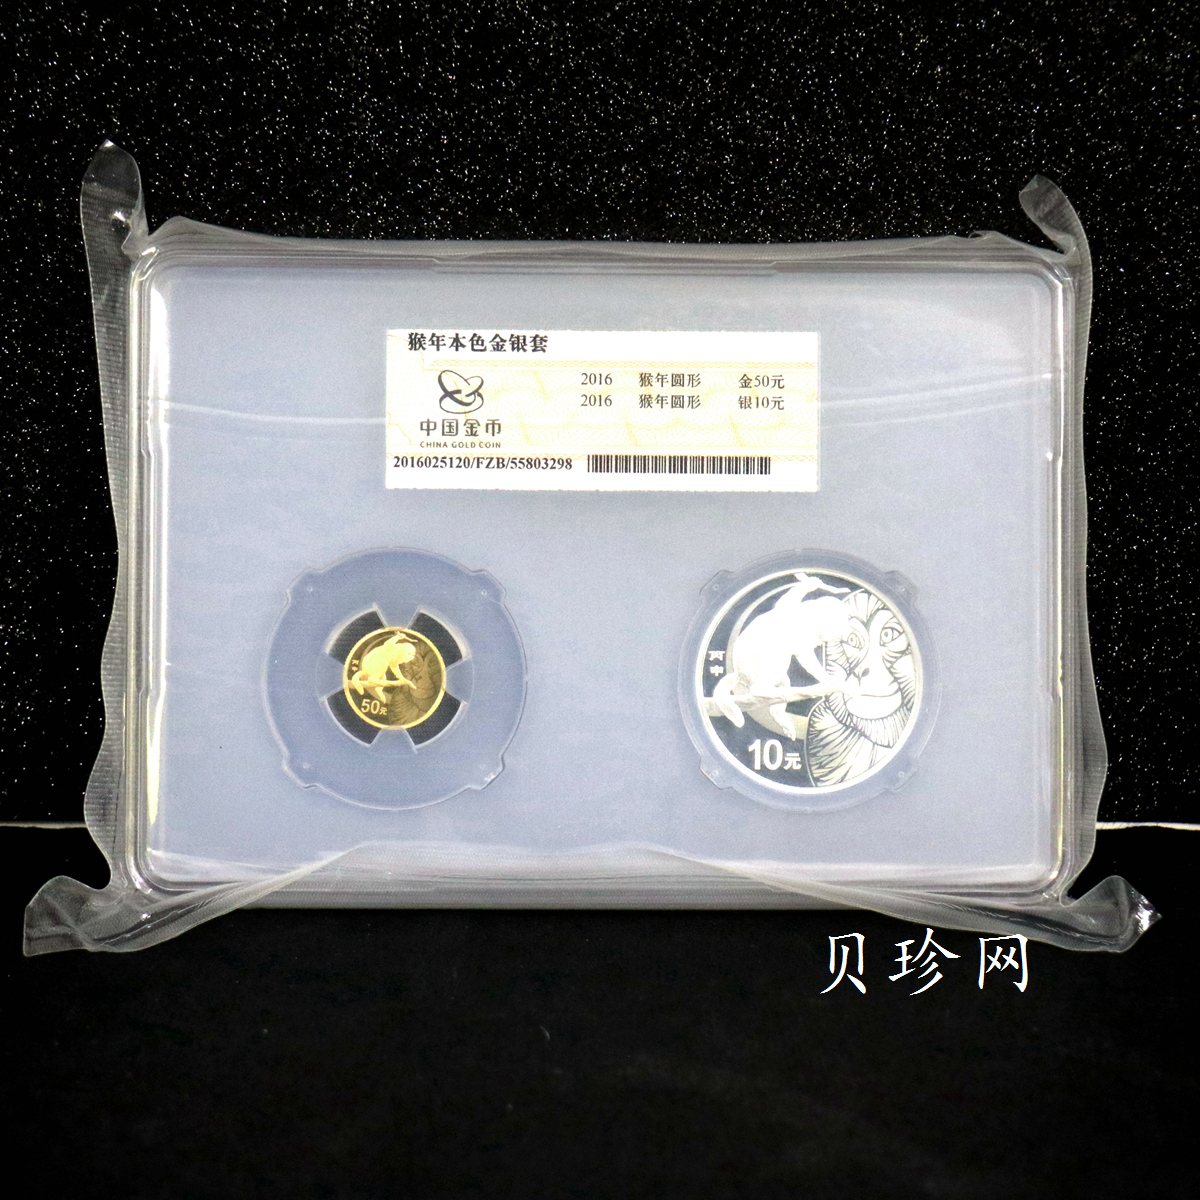 【169010】2016年丙申猴年生肖精制金银币2枚一套